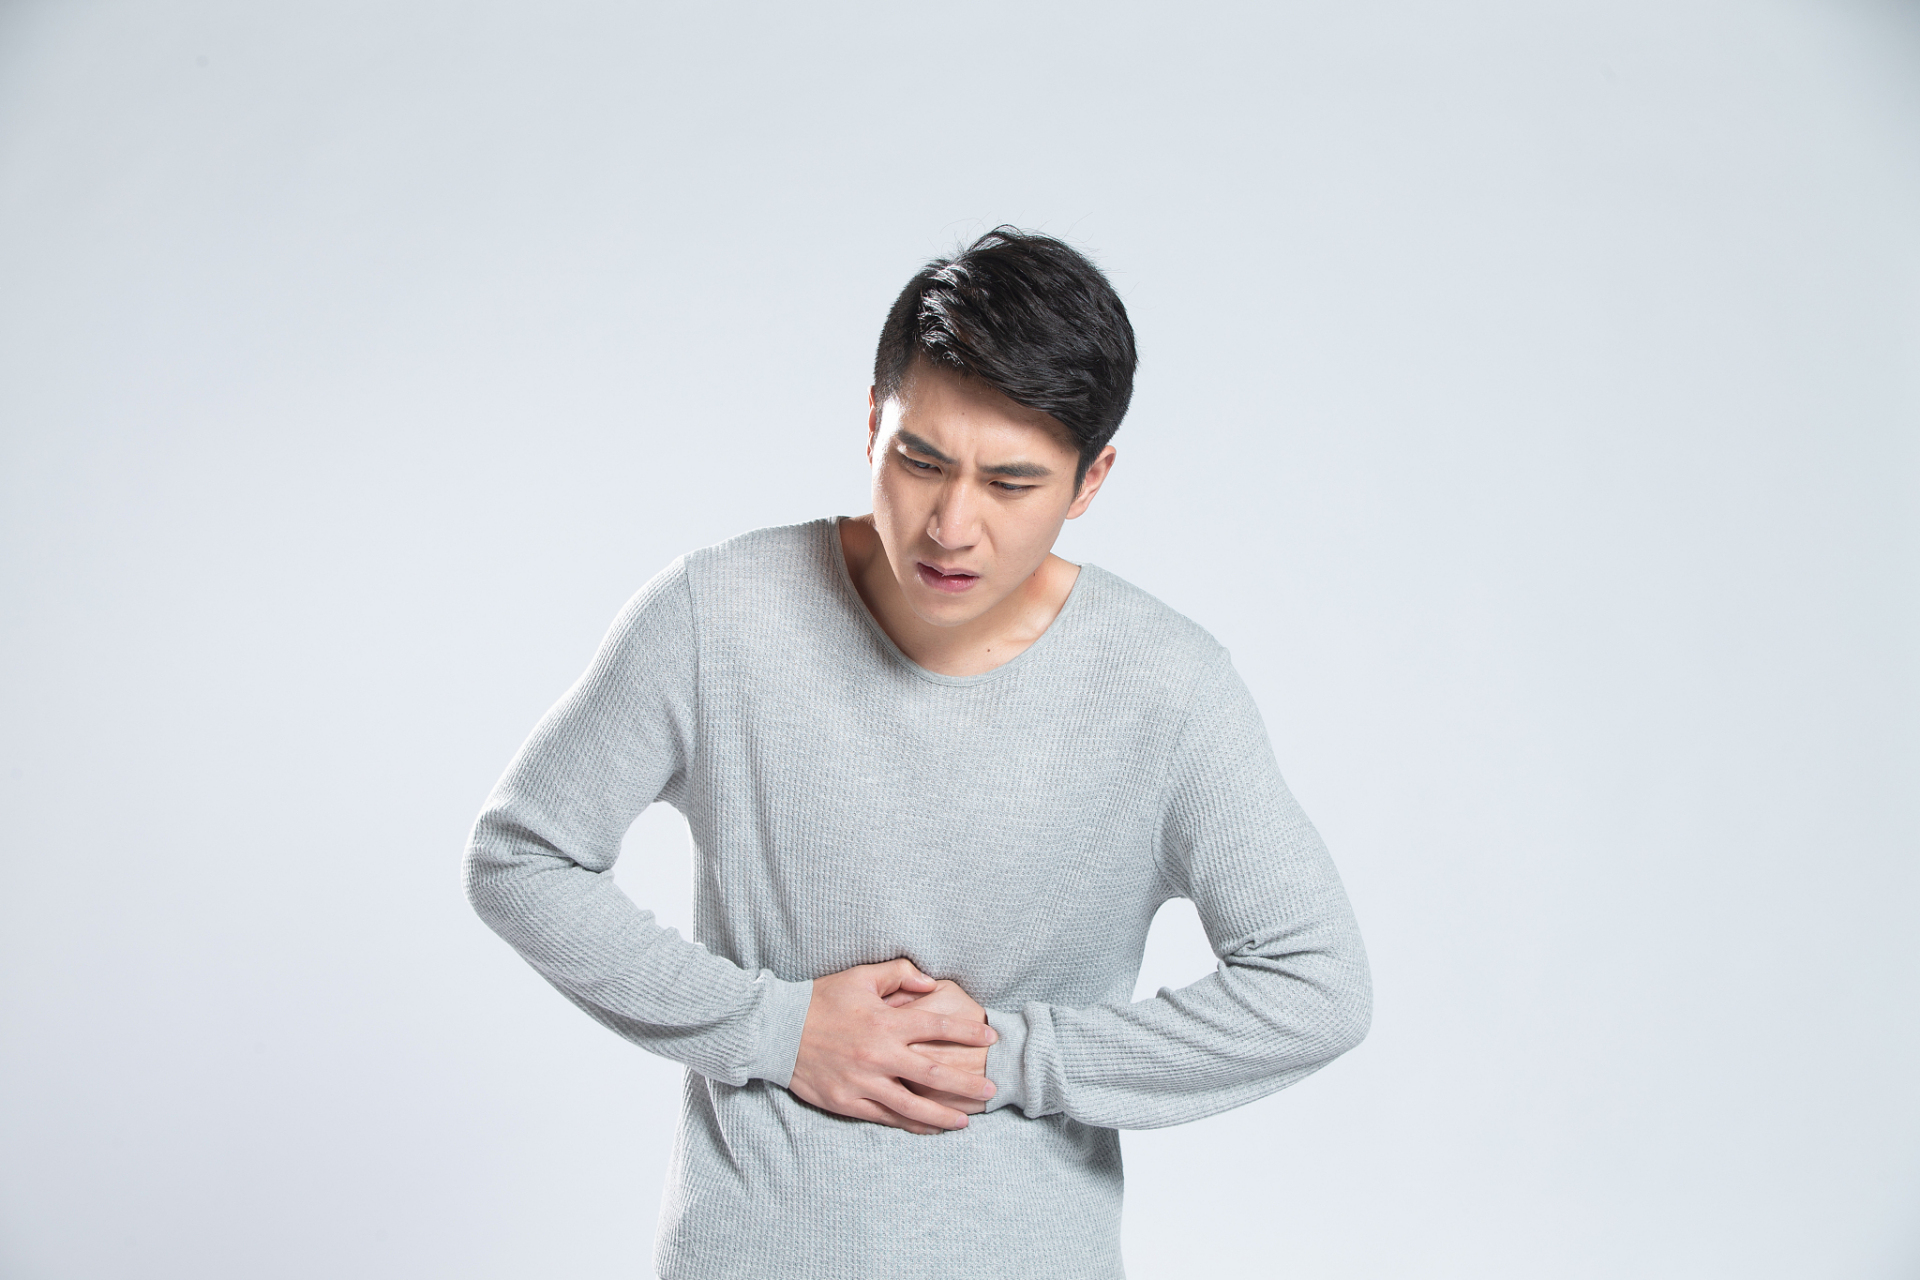 阑尾炎肚子绞痛可能有几种情况:胃肠道功能还没恢复,局部炎症加重和